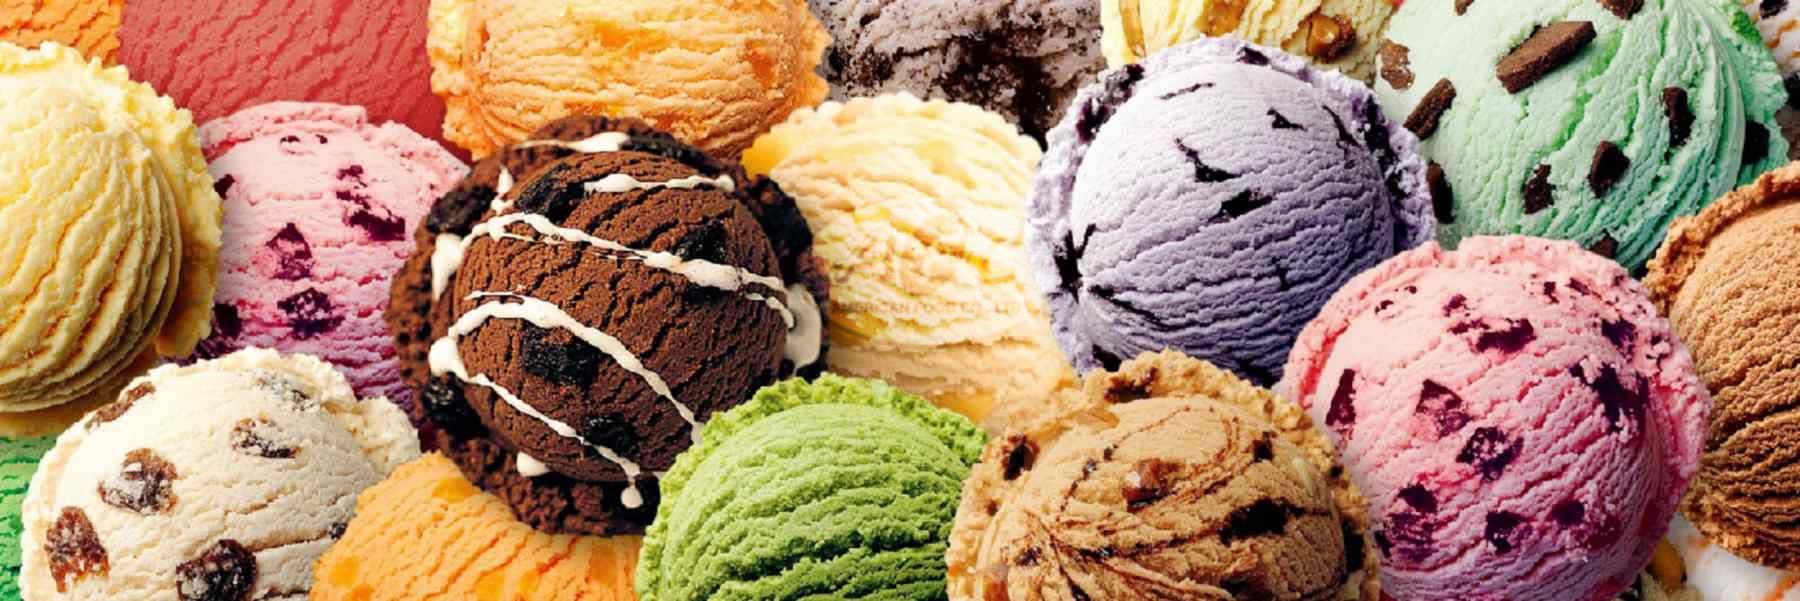 Σας πιάνει πονοκέφαλος όταν τρώτε παγωτό; – Ειδικοί εξηγούν τι φταίει